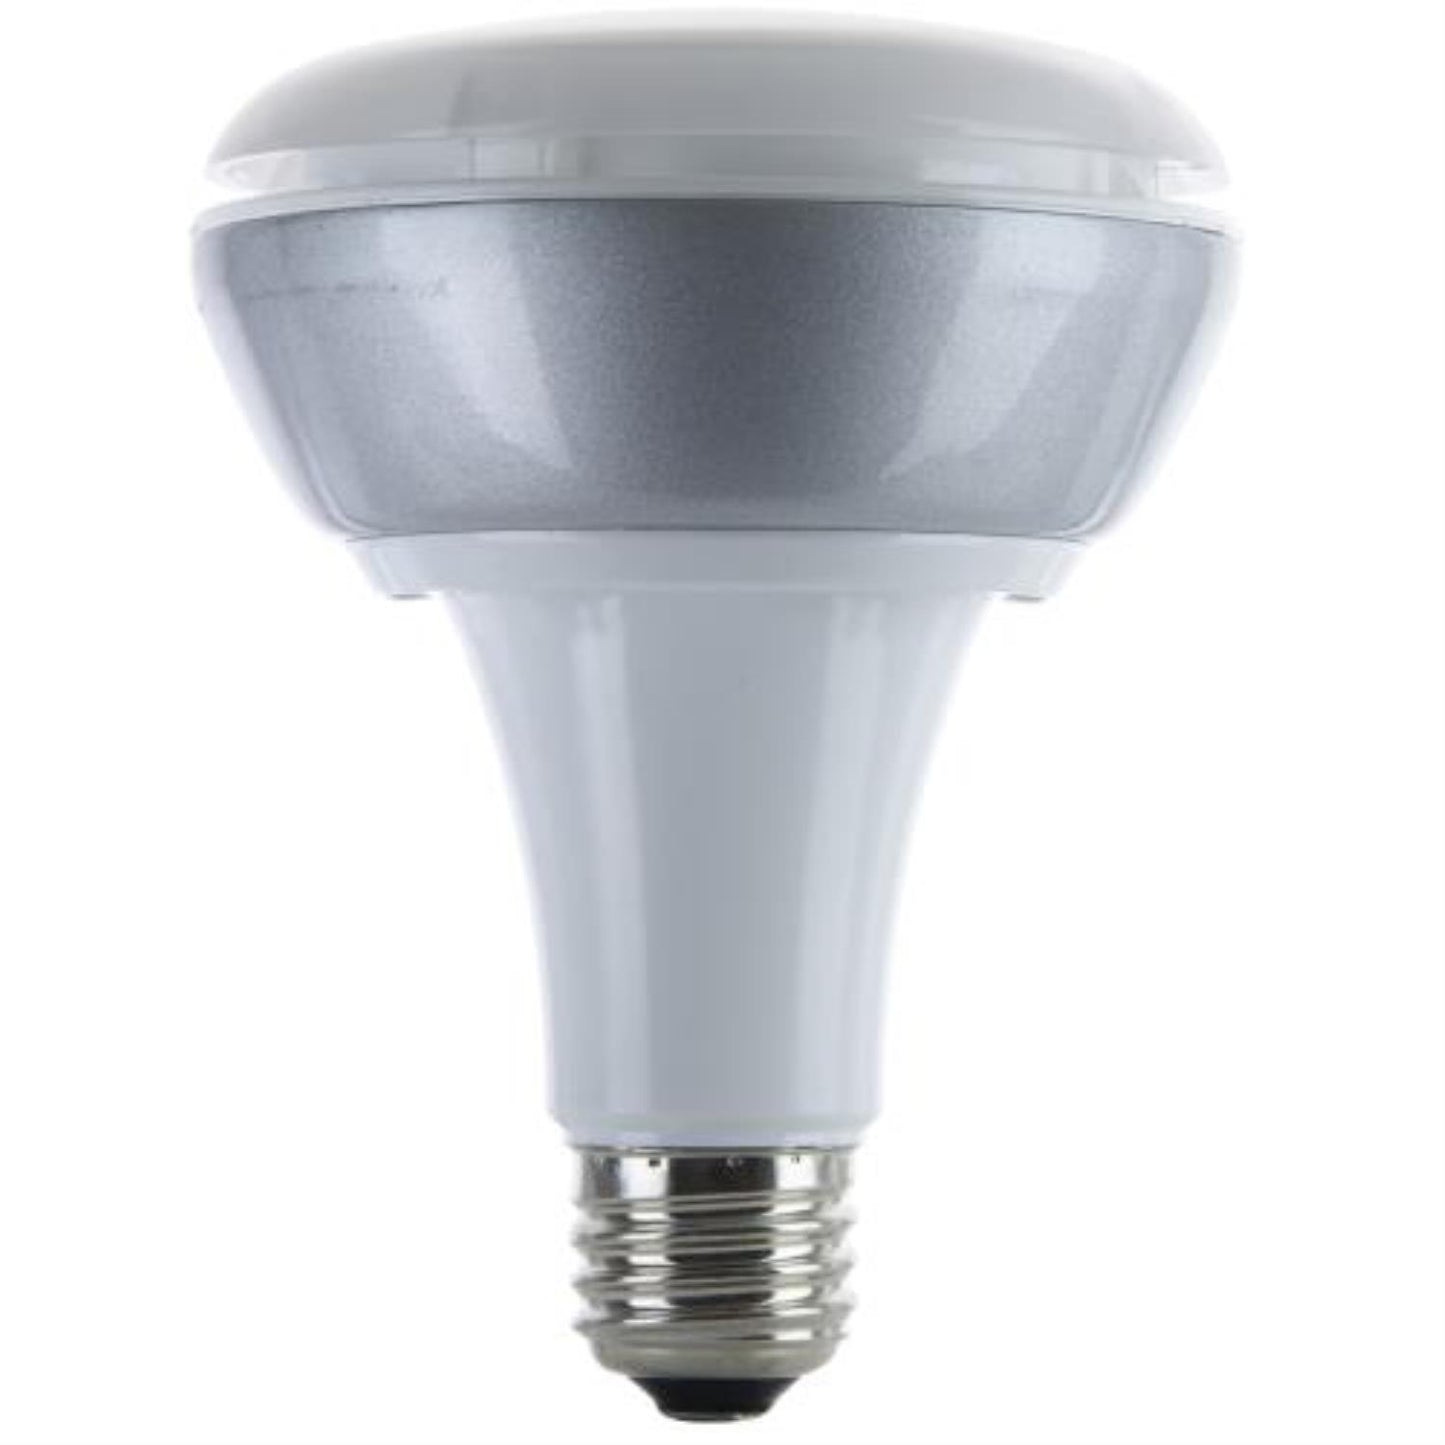 Sunlite LED 12.5 Watt Dimmable BR30 Reflector 3000K Warm White 940 Lumens Light Bulb